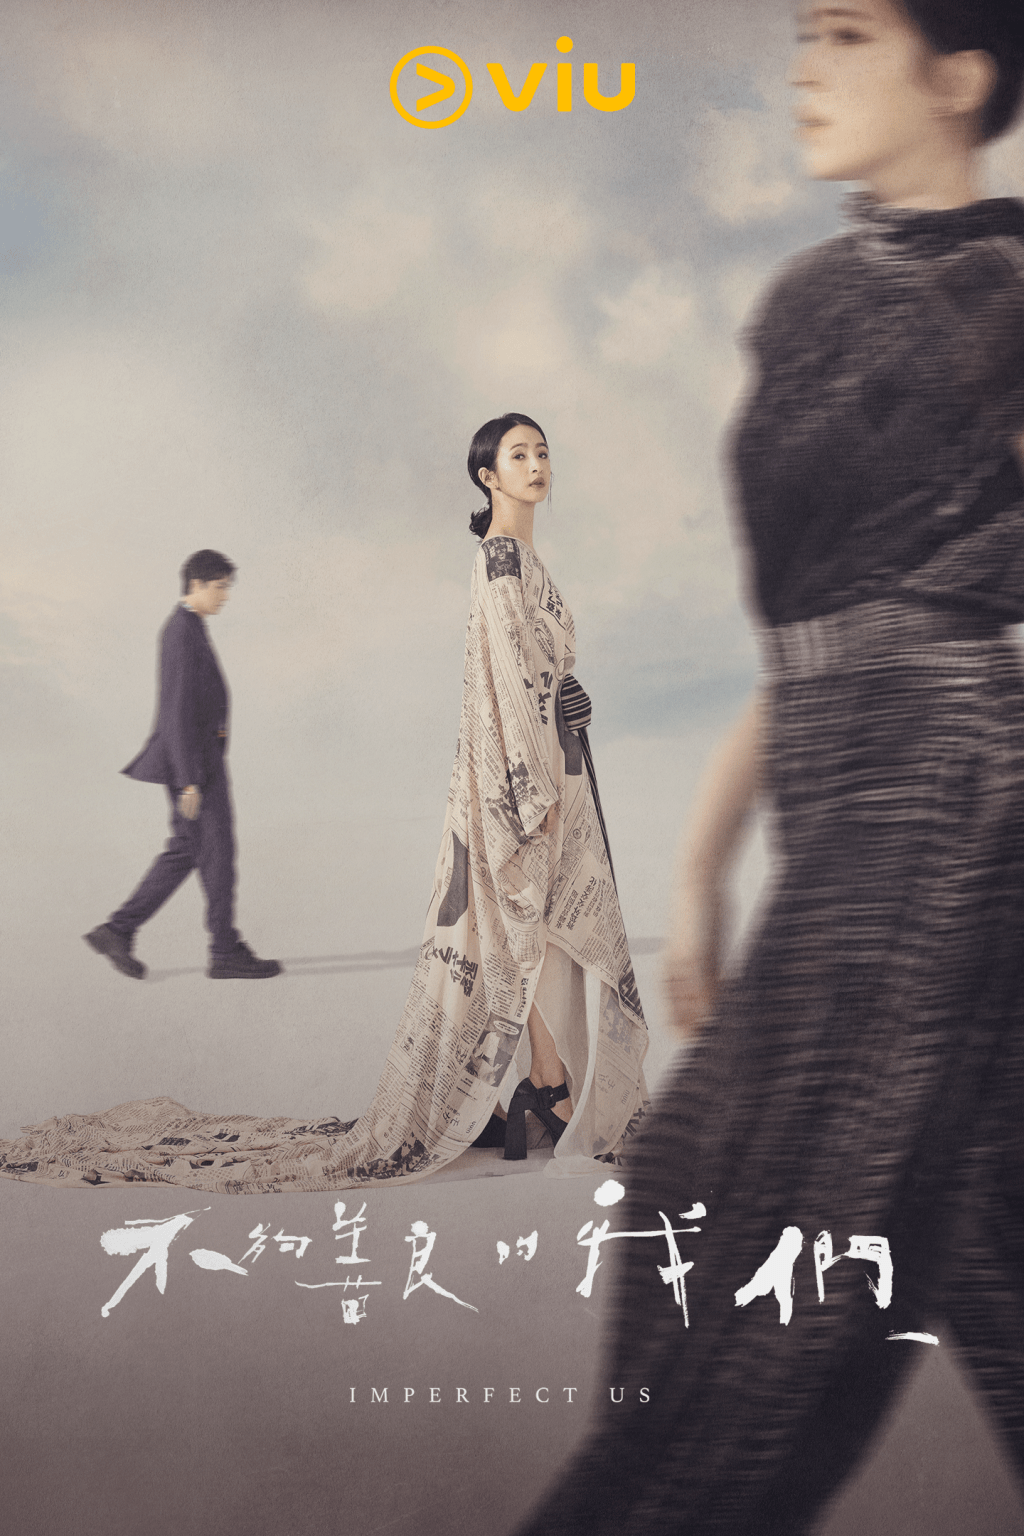 《不够善良的我们》已登陆「黄Viu」，香港观众可免费收看。